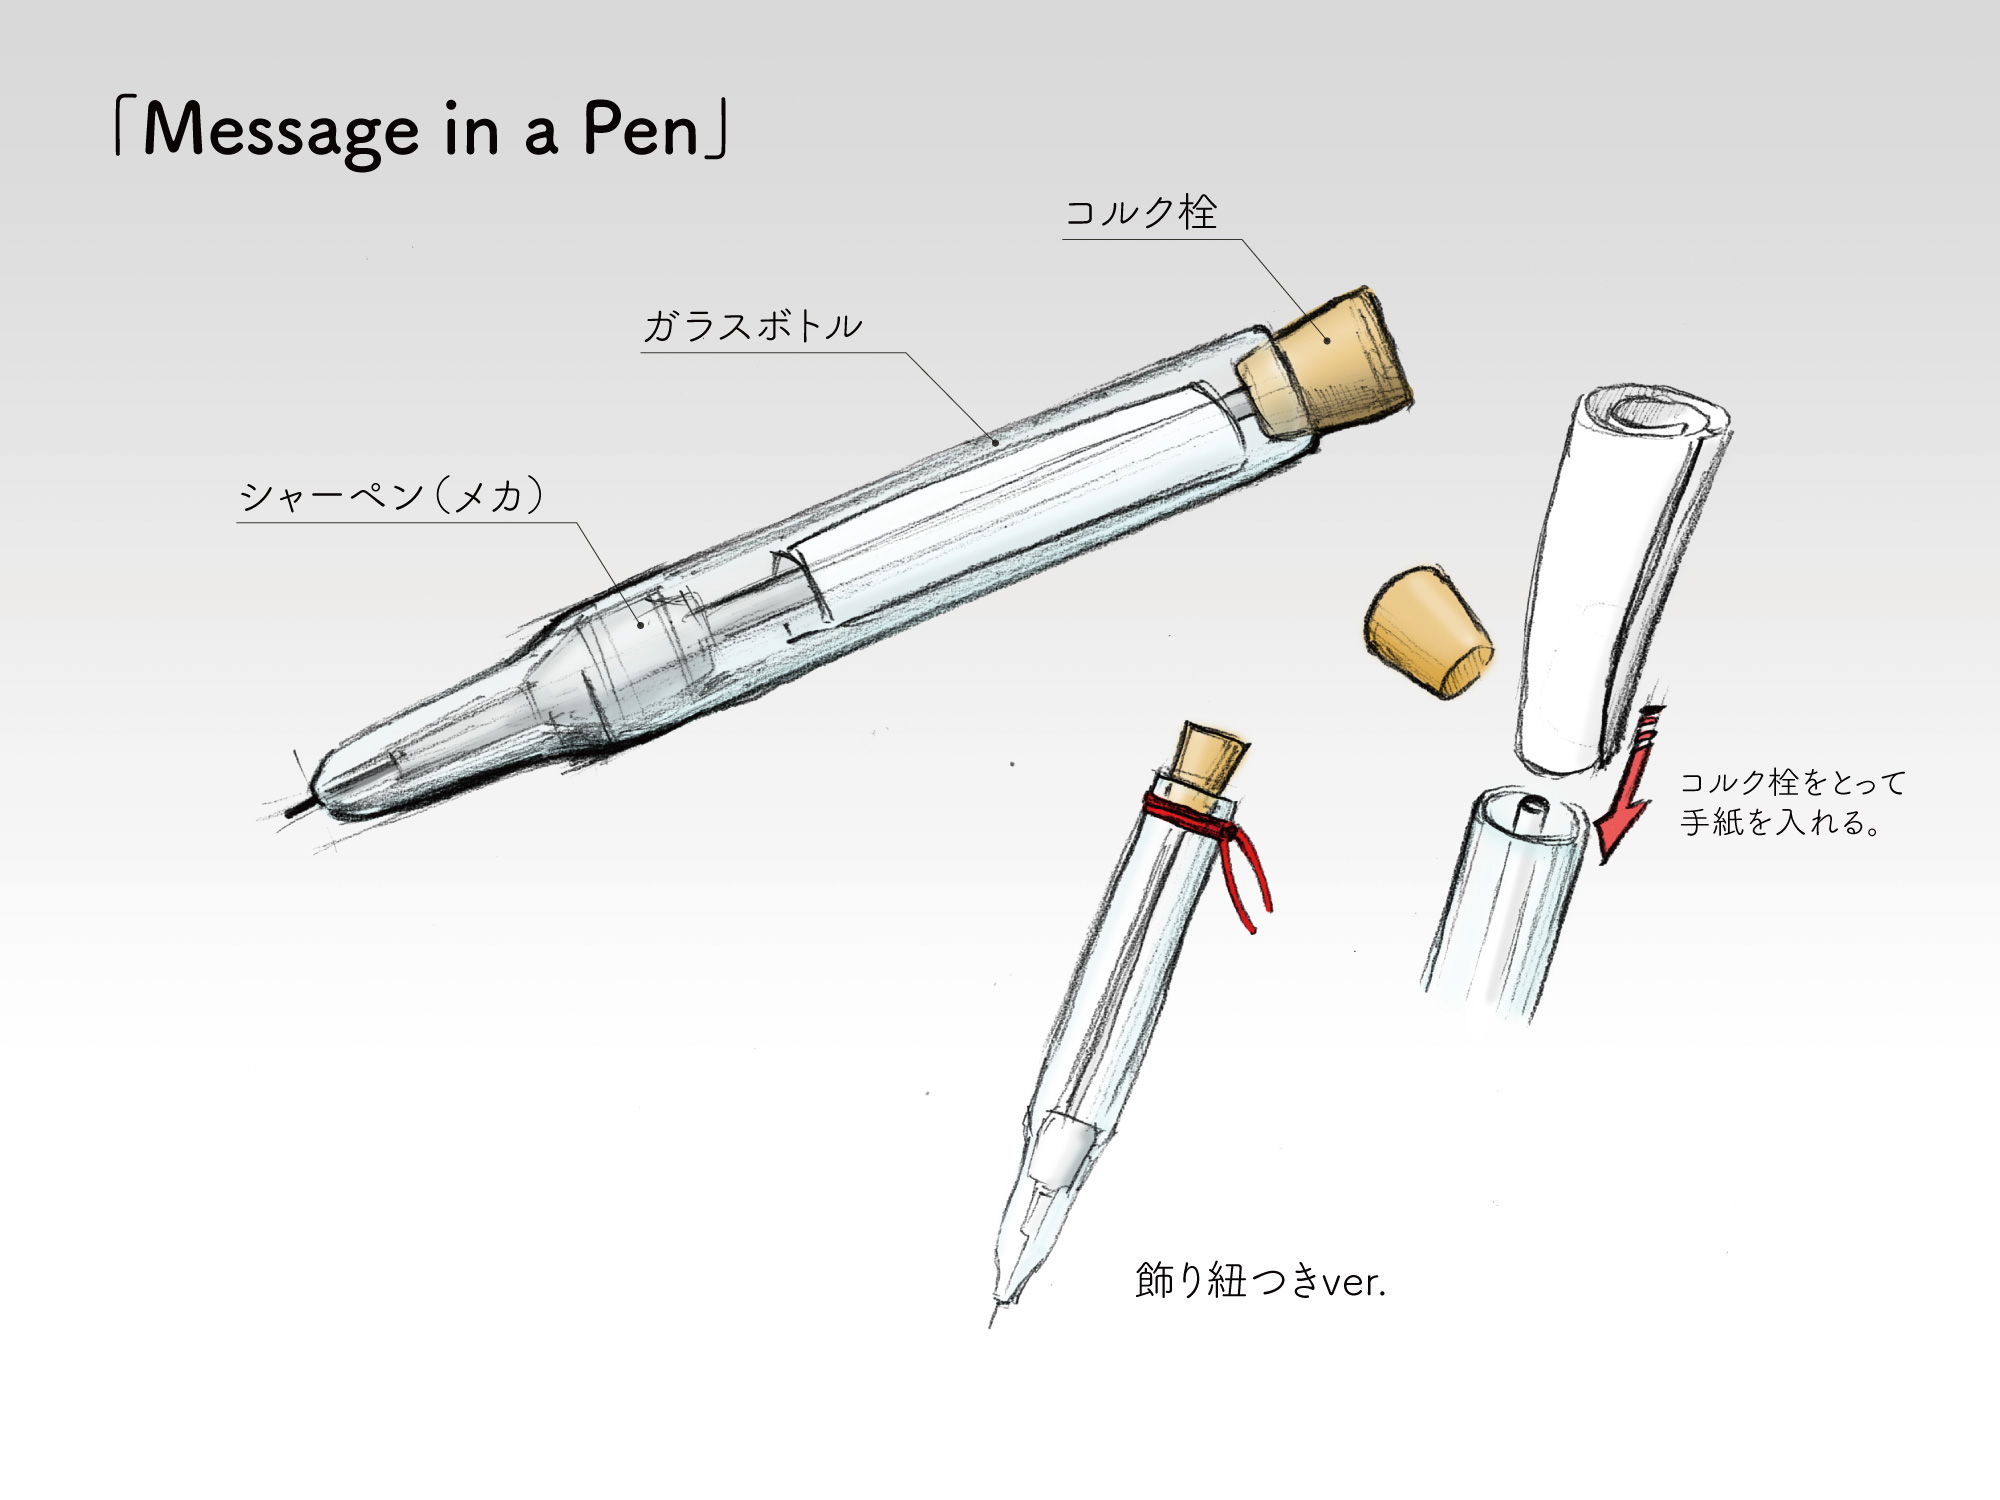 審査員特別山根賞 「Message in a Pen」 斉藤 智徳（サイトウ　トモノリ）様